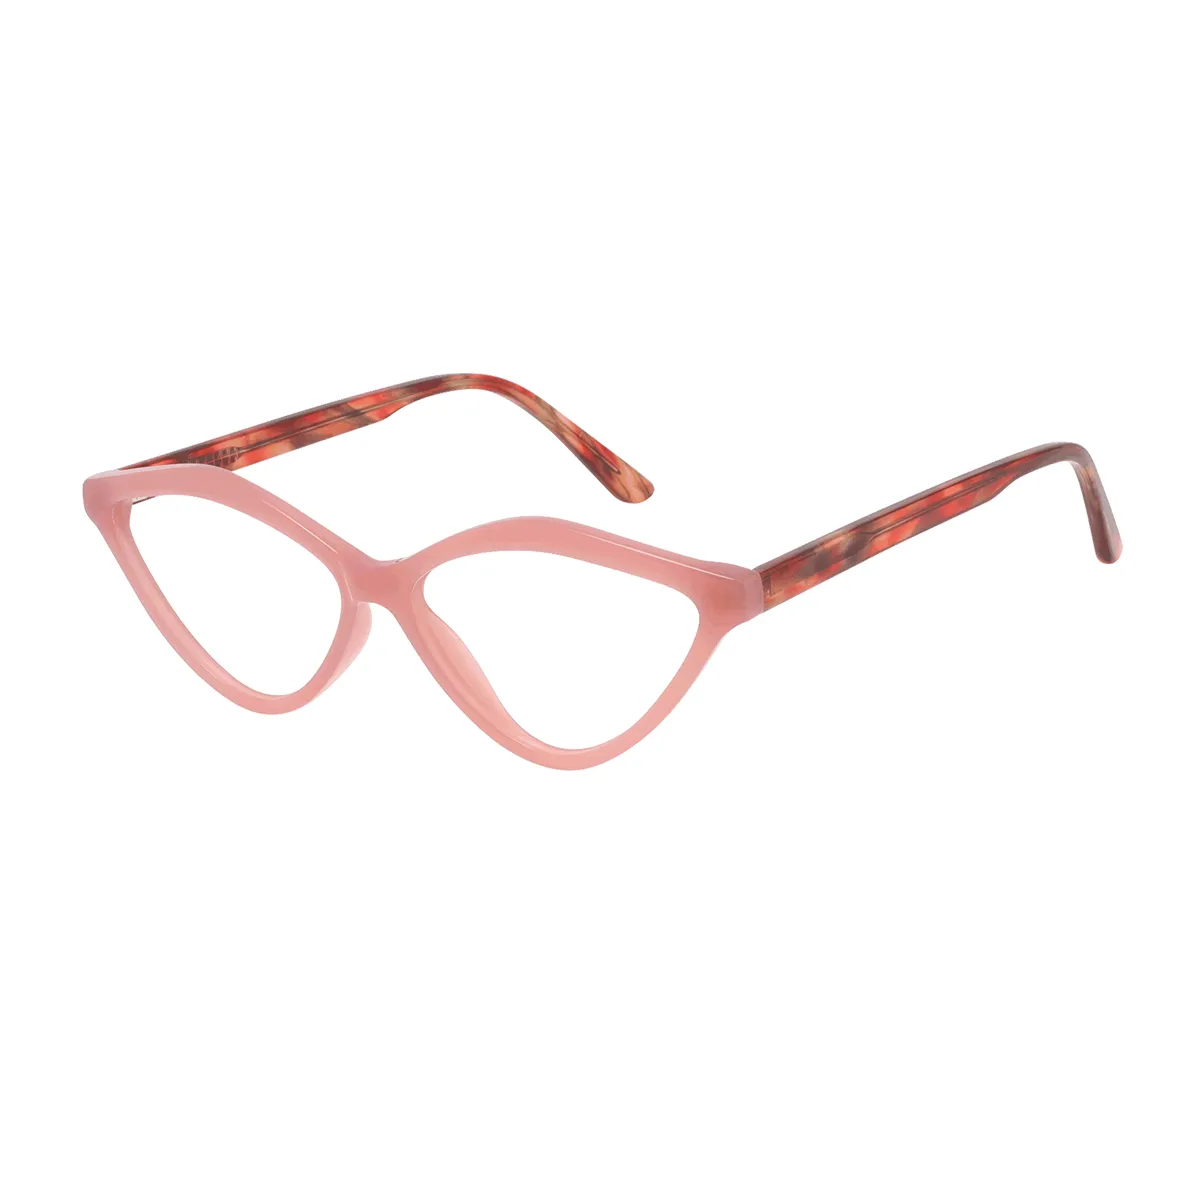 Naomi - Cat-eye Pink-Tortoiseshell Glasses for Women